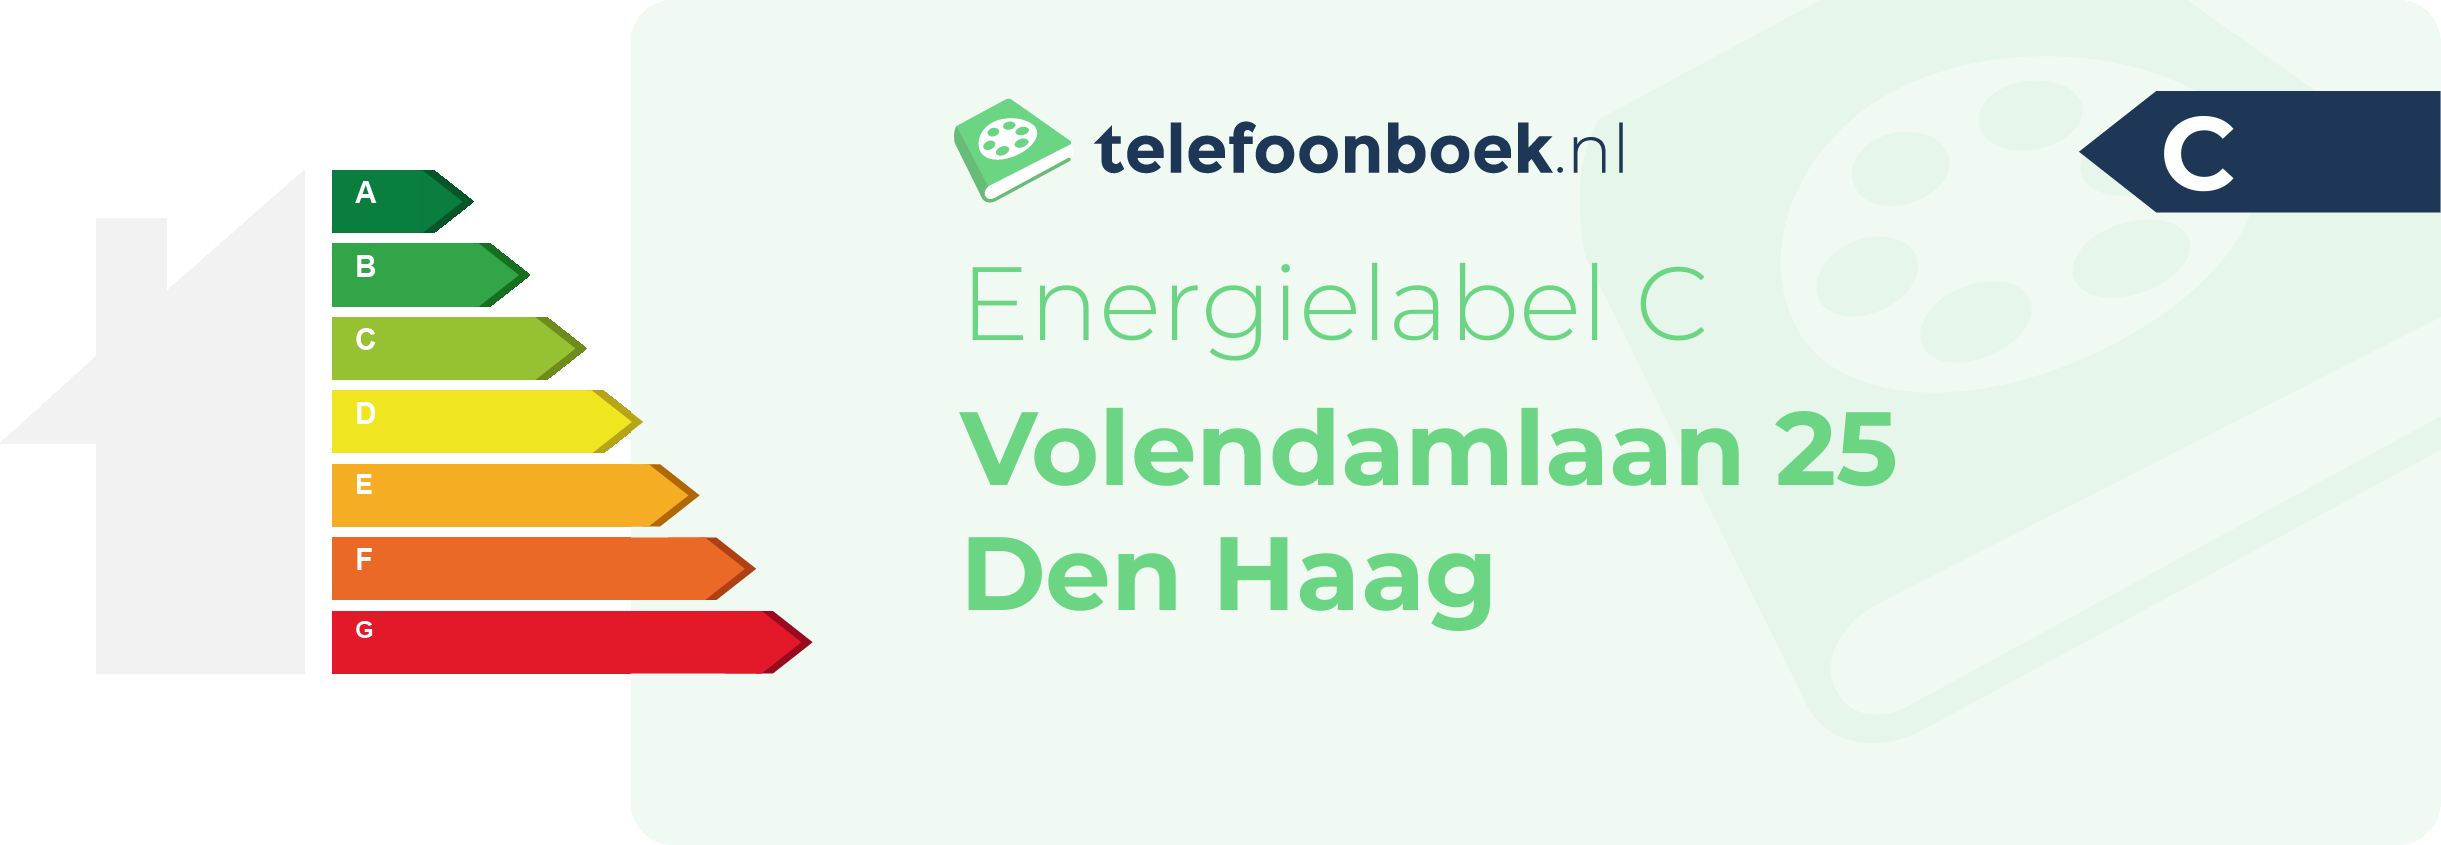 Energielabel Volendamlaan 25 Den Haag